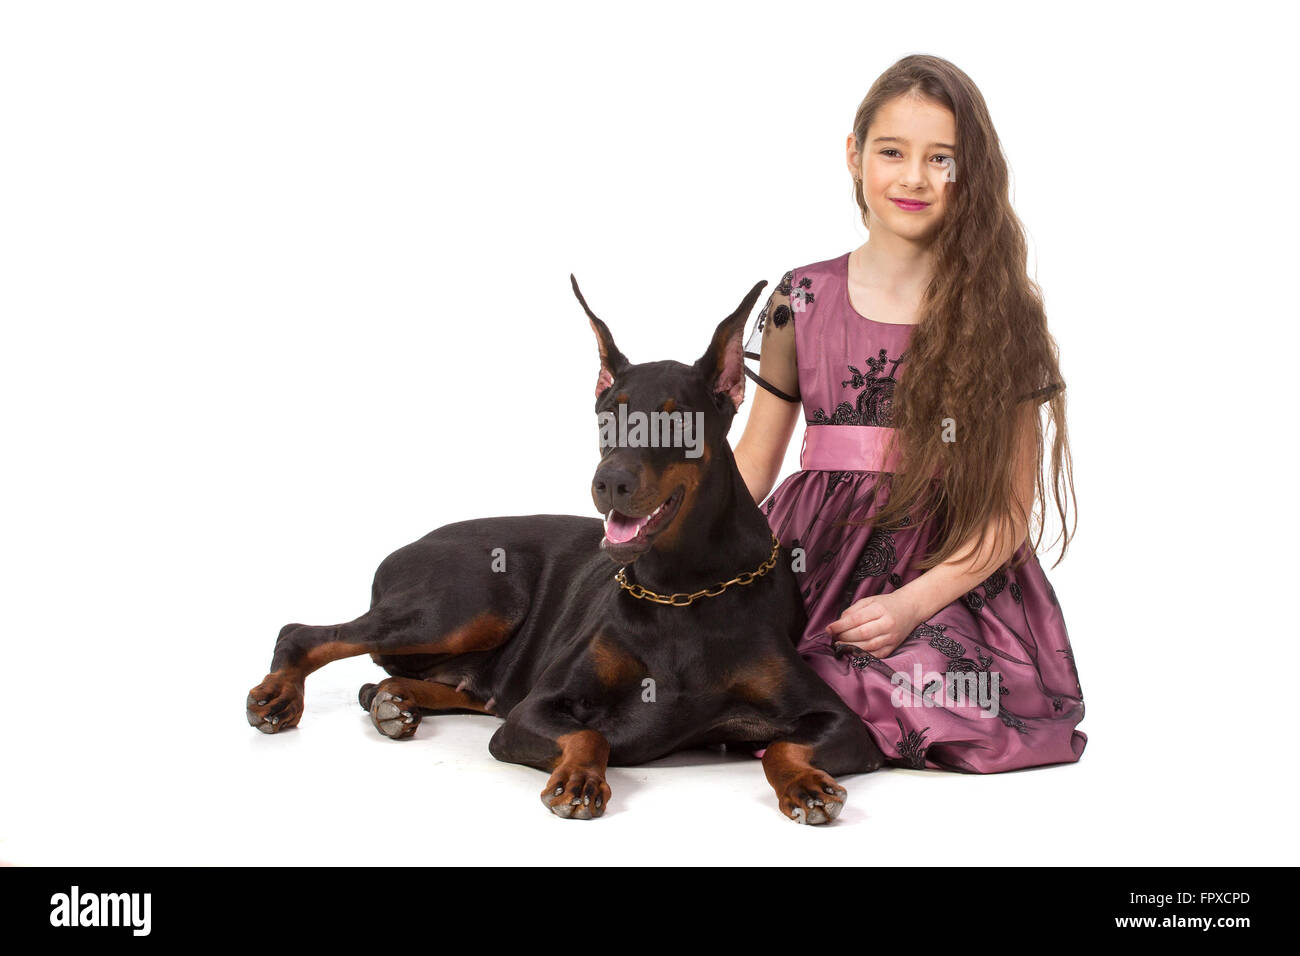 Capelli lunghi ragazza con Big Black Dog doberman, isolato su bianco Foto Stock